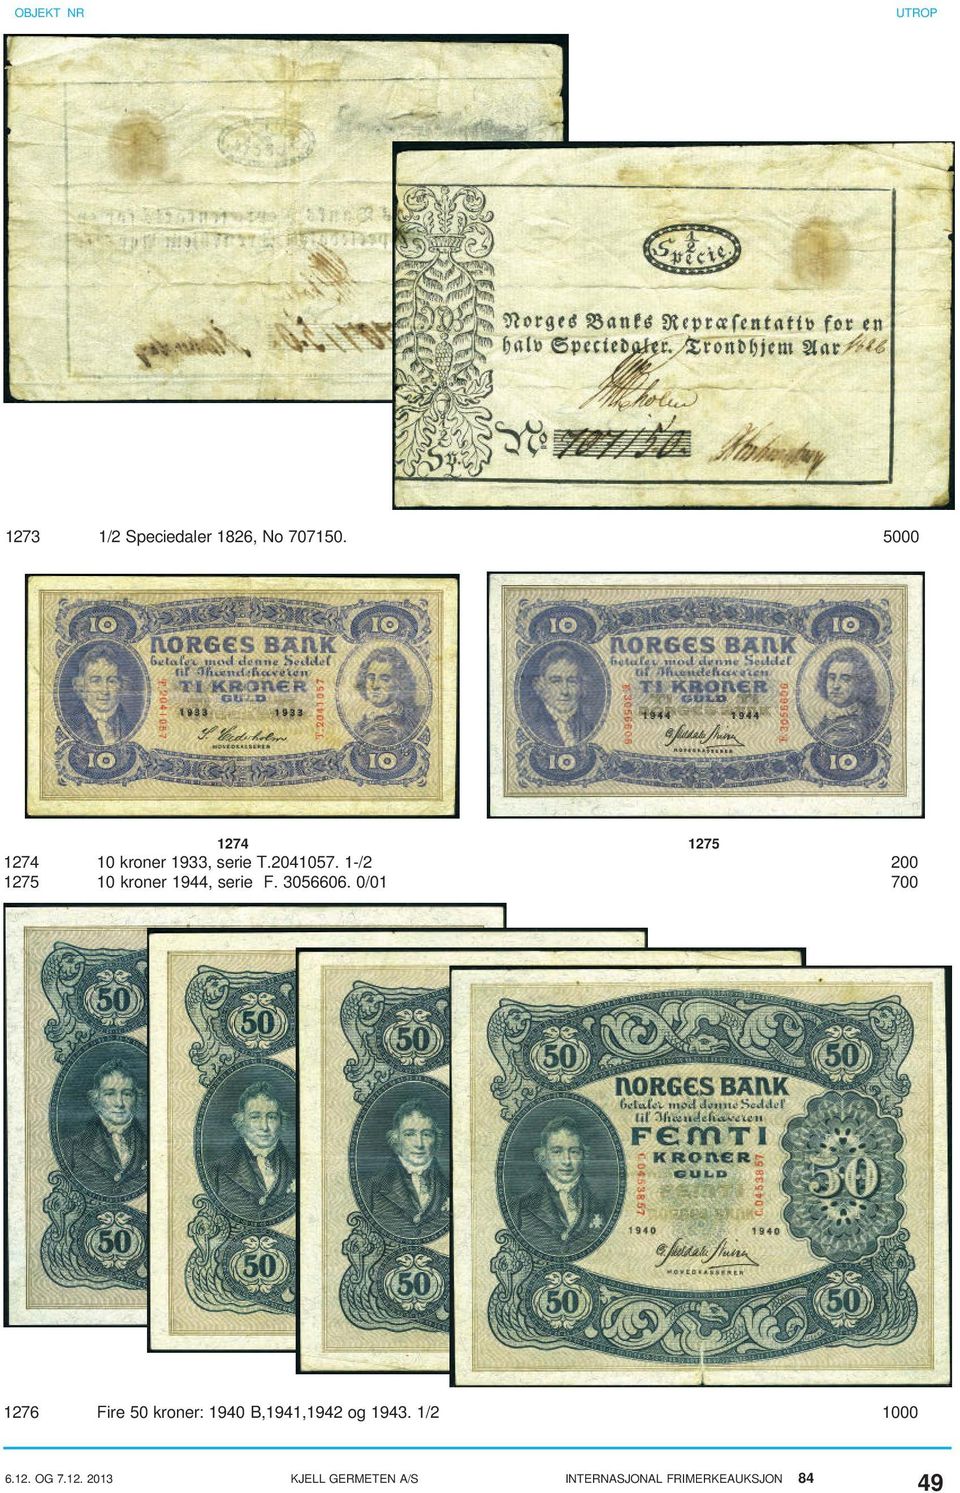 1-/2 200 1275 10 kroner 1944, serie F. 3056606.